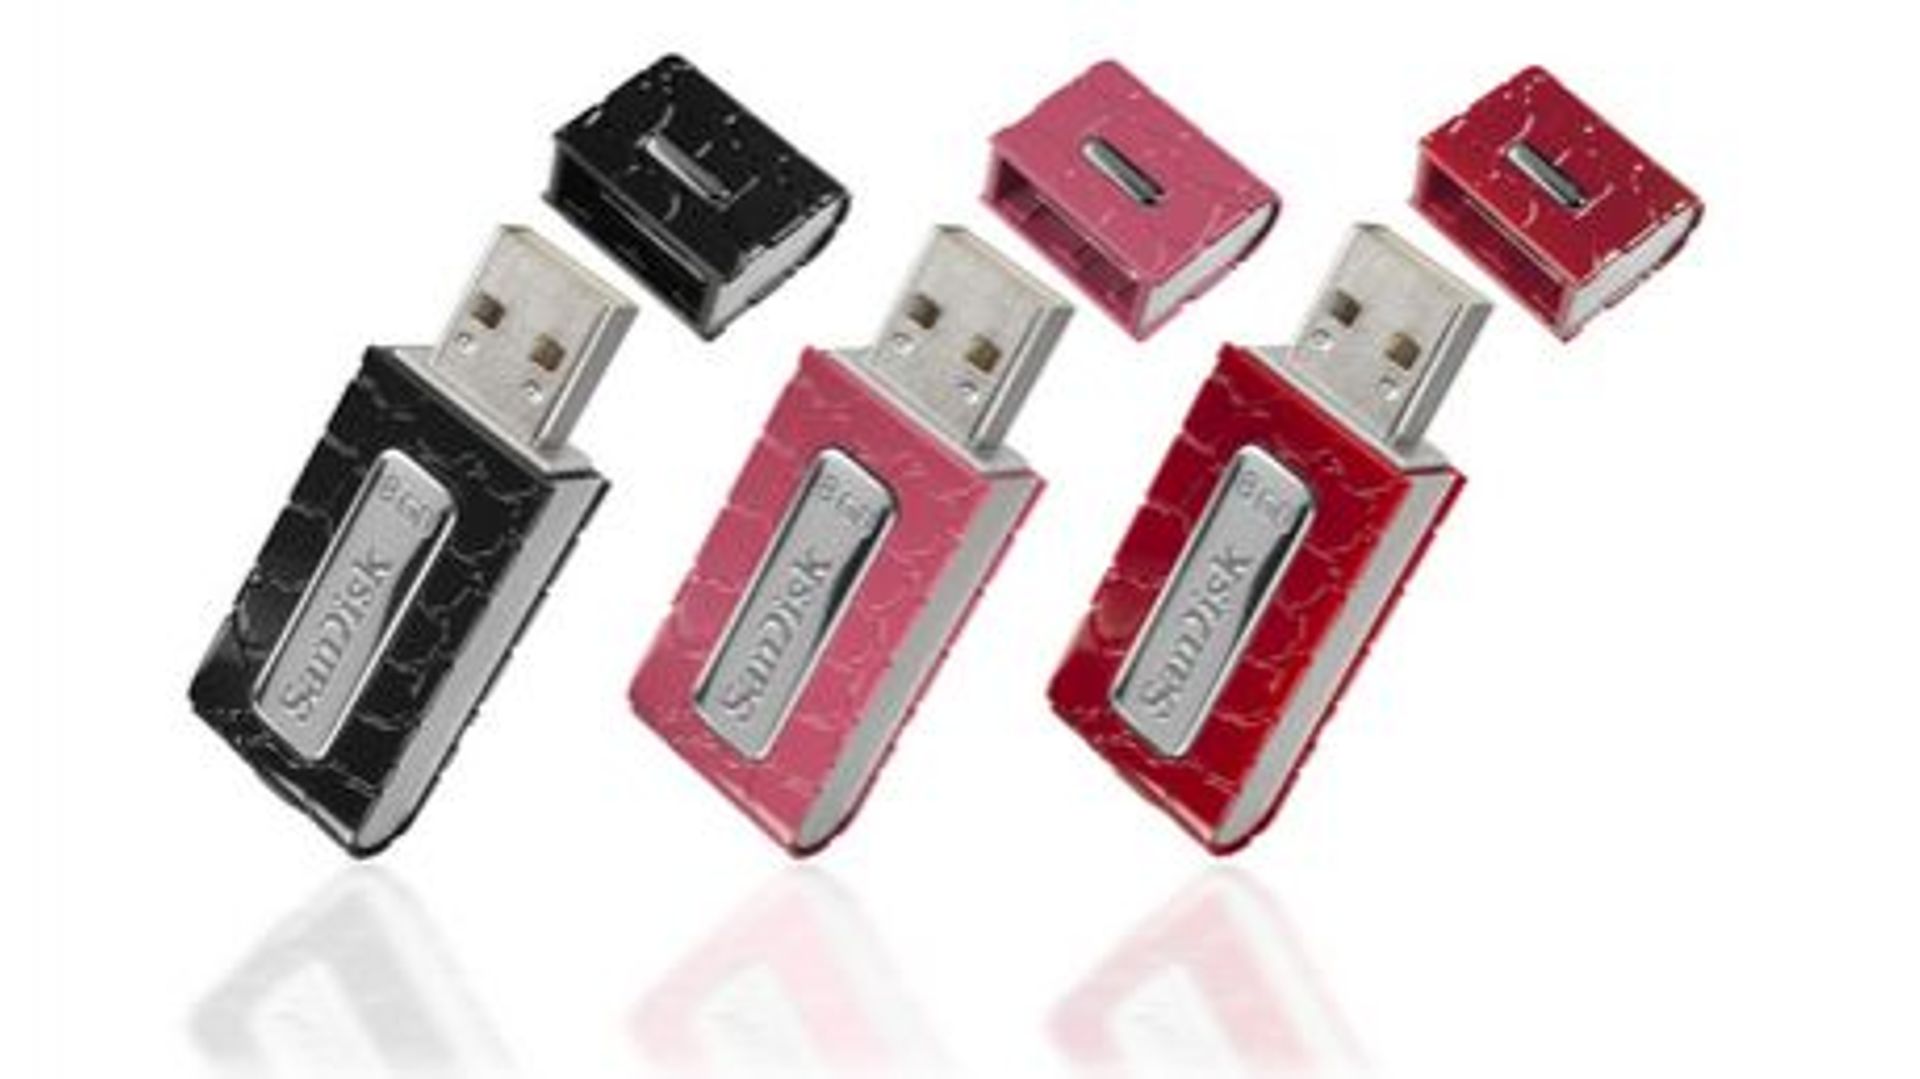 Clé USB ou carte SD : le match du stockage amovible